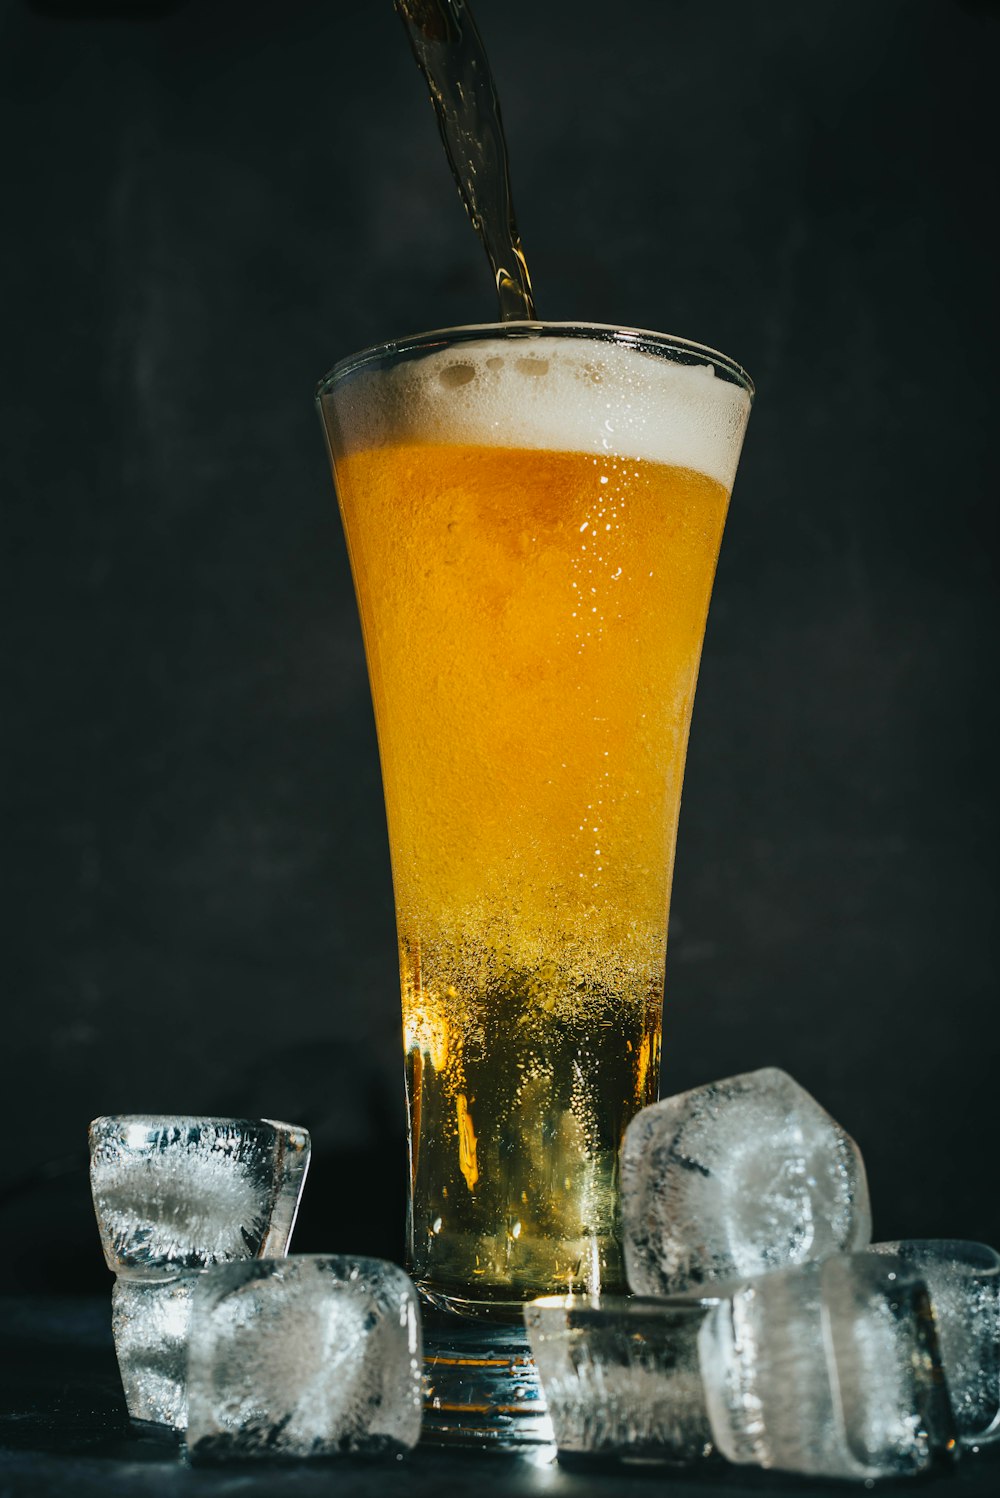 Vaso transparente con cerveza